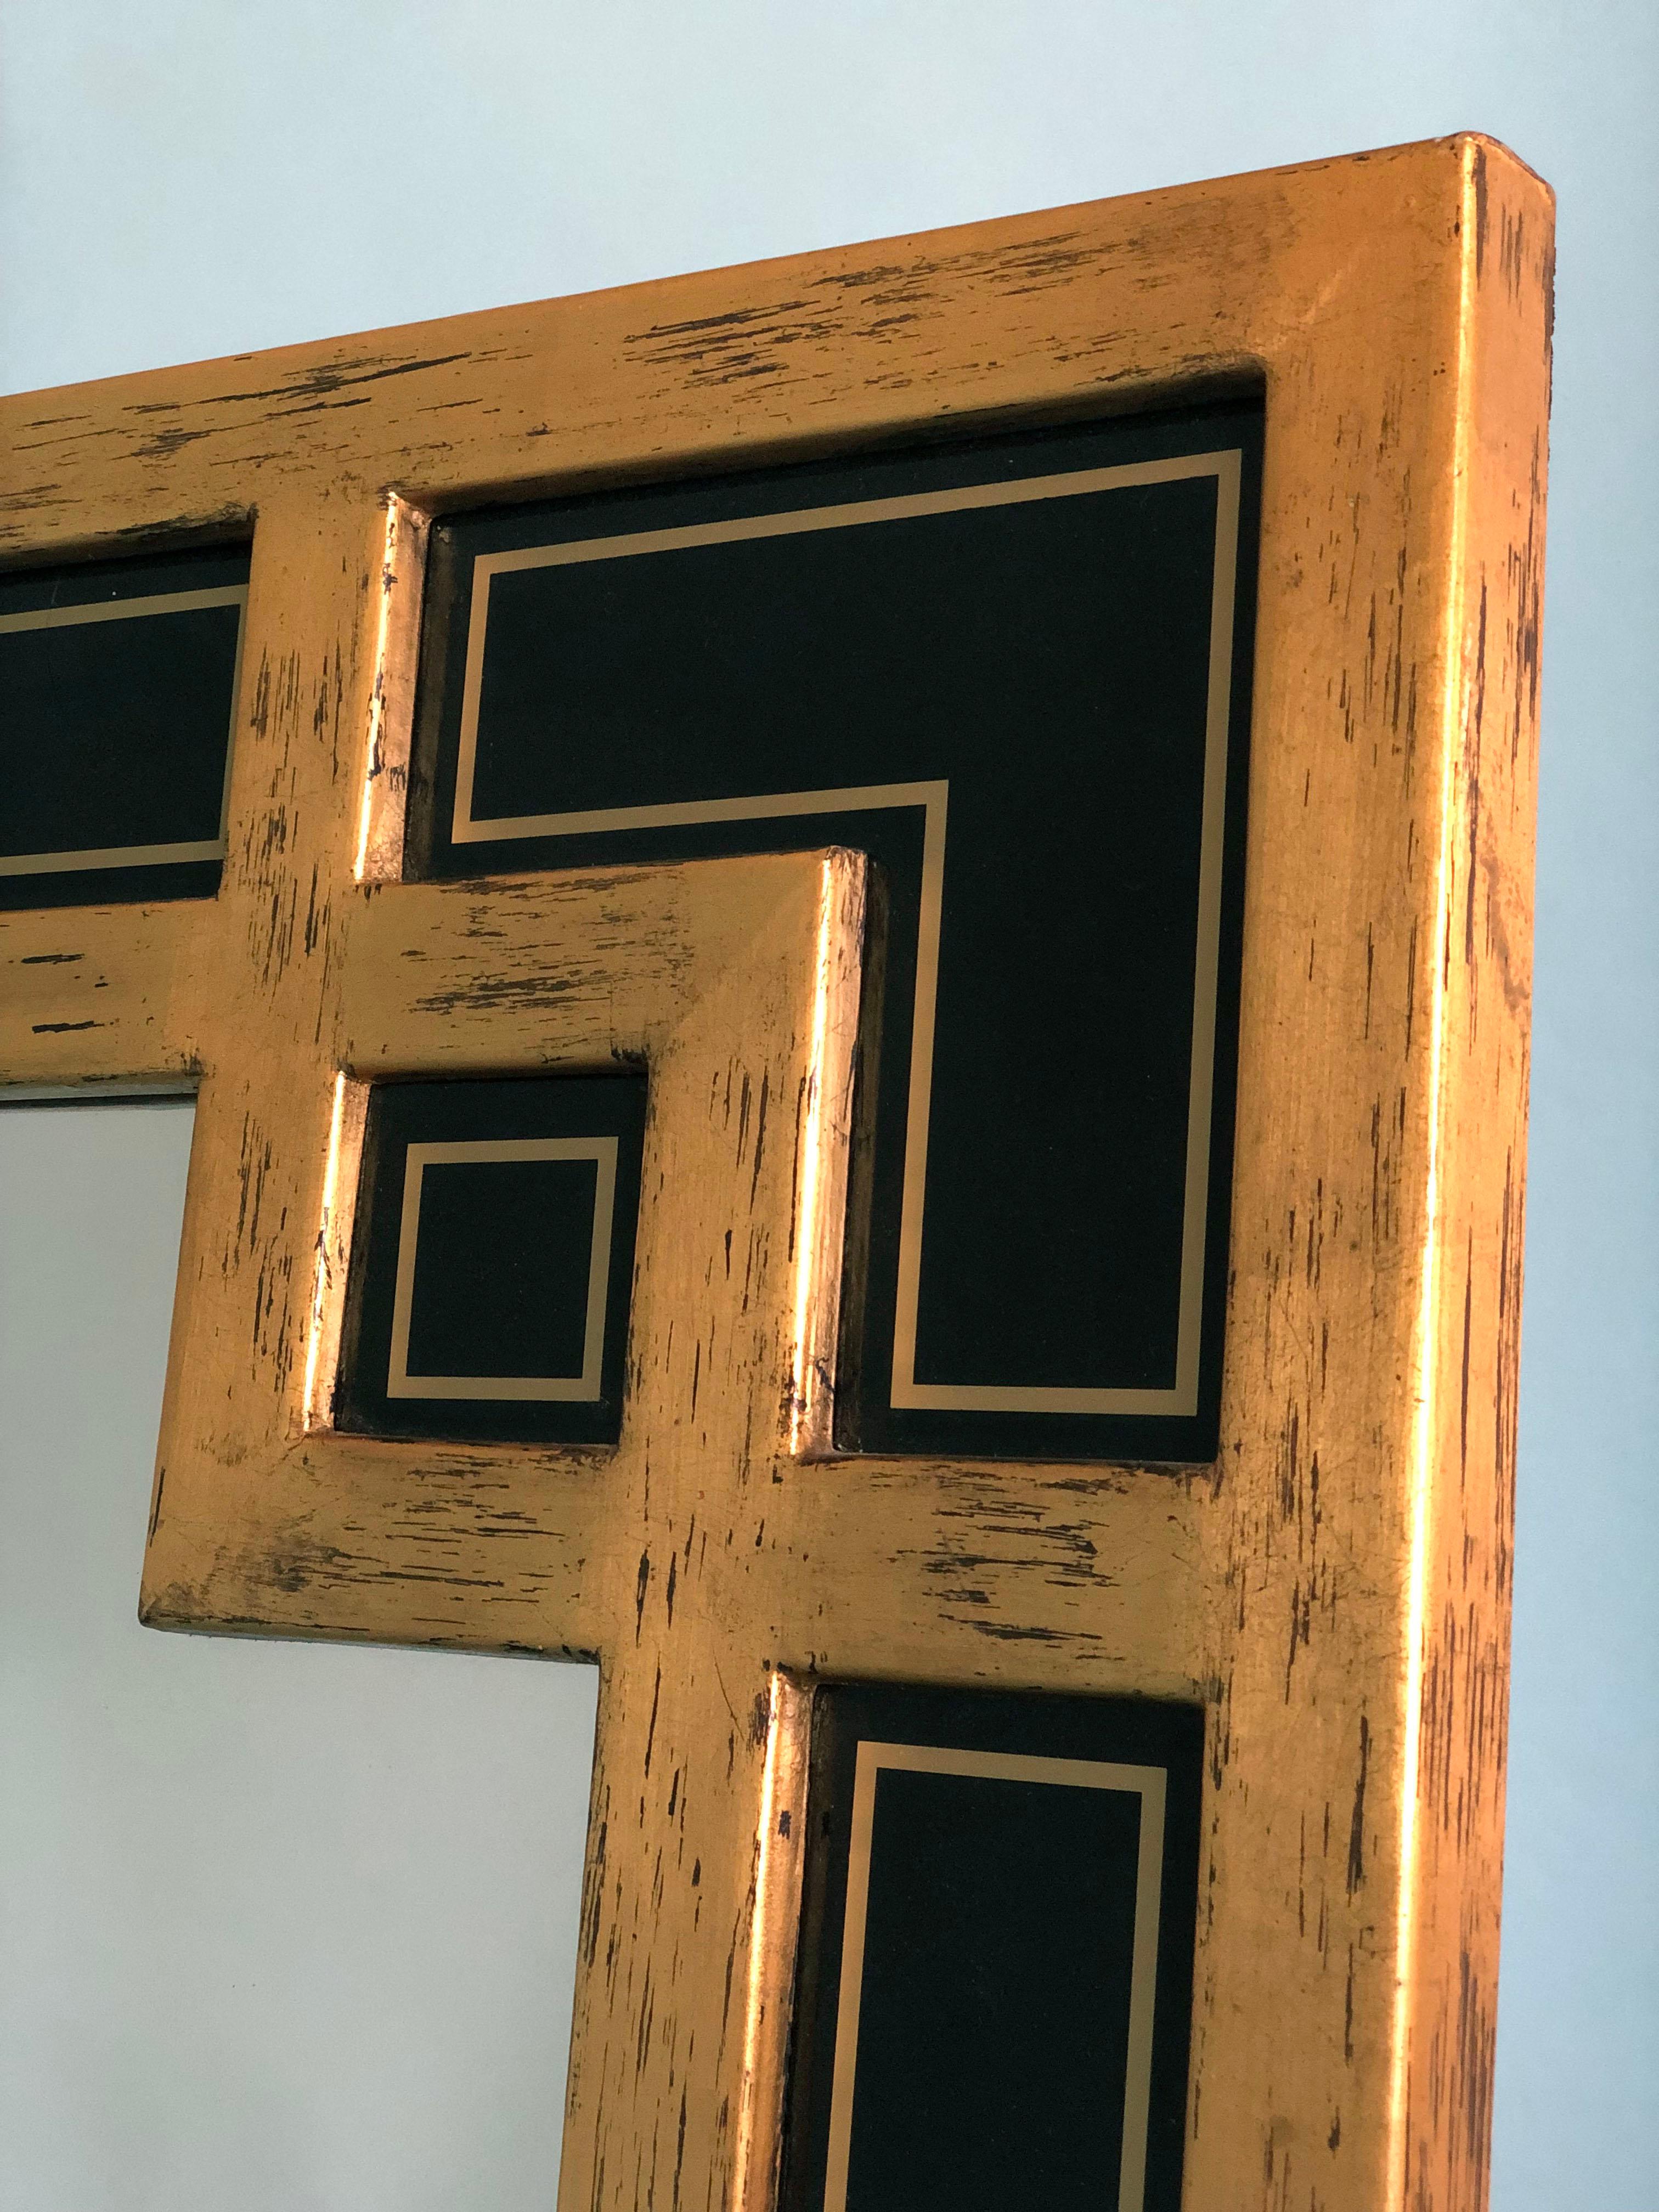 Großer Spiegel mit vergoldetem Holzrahmen in Mäanderform. Hergestellt in Belgien von Deknudt in den 1970er Jahren. Mit eingefügten schwarzen Glasplatten, die das Design vervollständigen.

Wunderschön verwitterter Spiegel In sehr gutem Zustand.